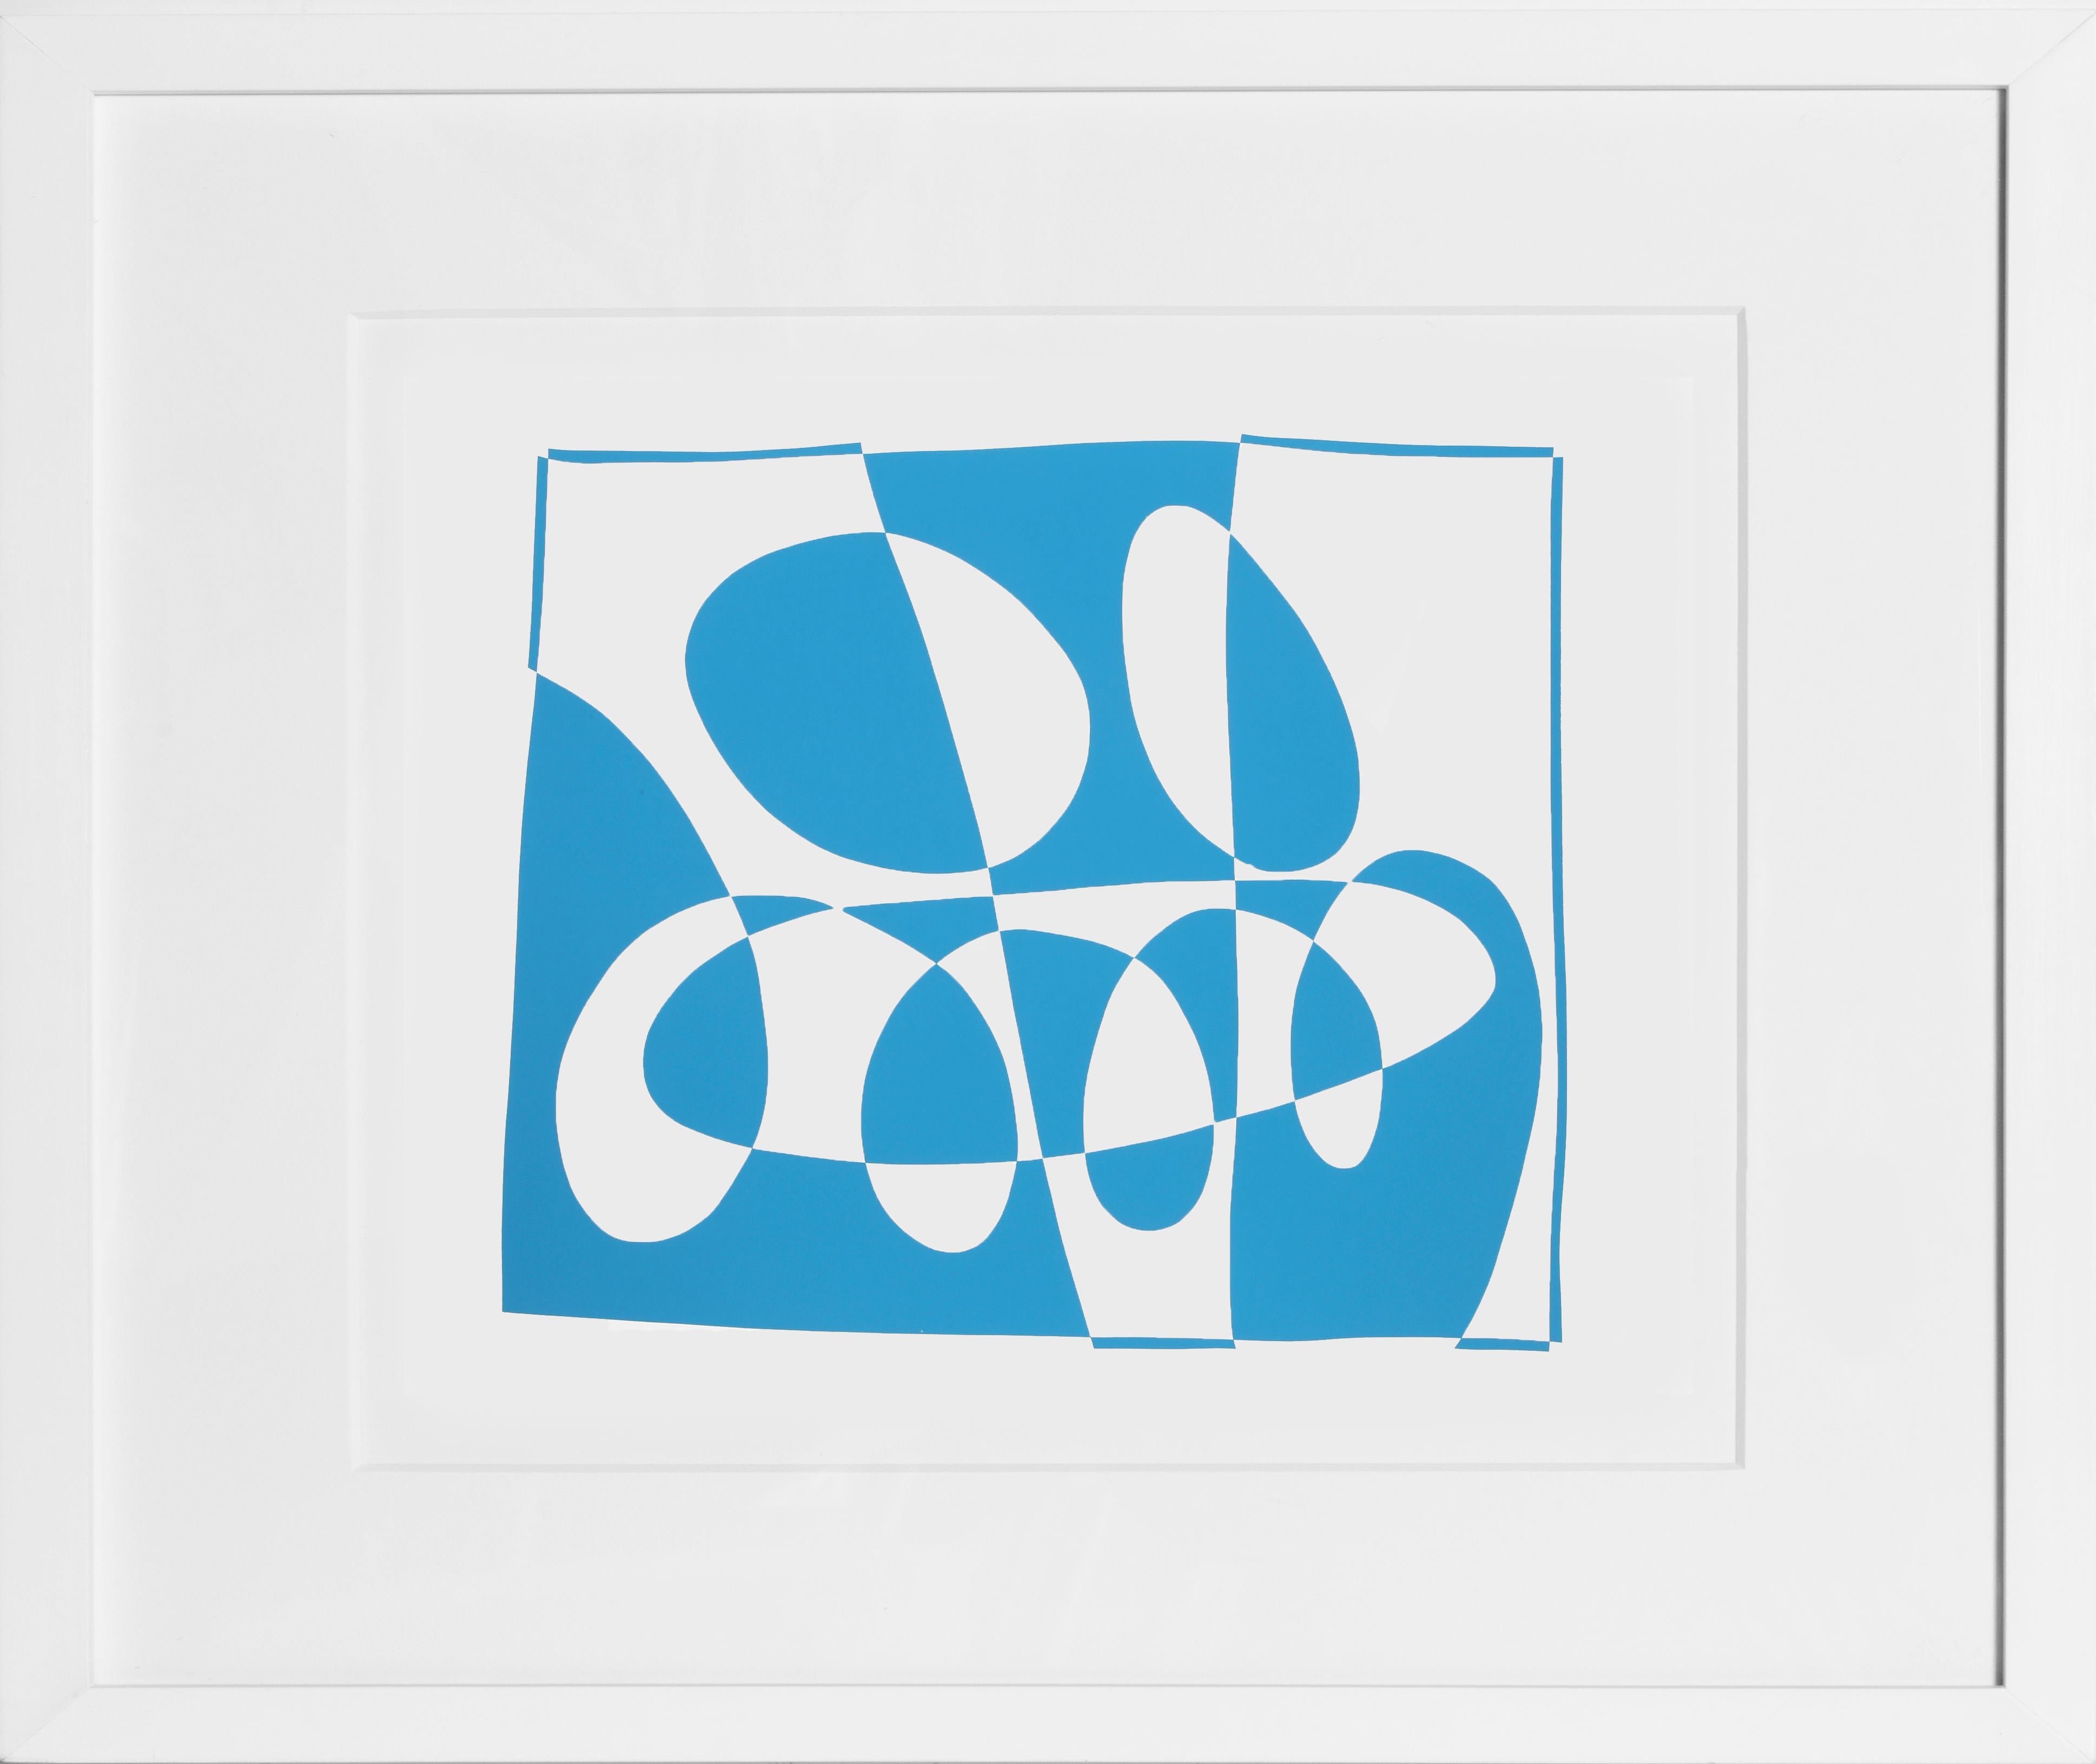 Extrait du portfolio "Formulation : Articulation" créé par Josef Albers en 1972. Cette série monumentale se compose de 127 sérigraphies originales qui constituent une étude définitive des plus importantes théories de couleurs et de formes de